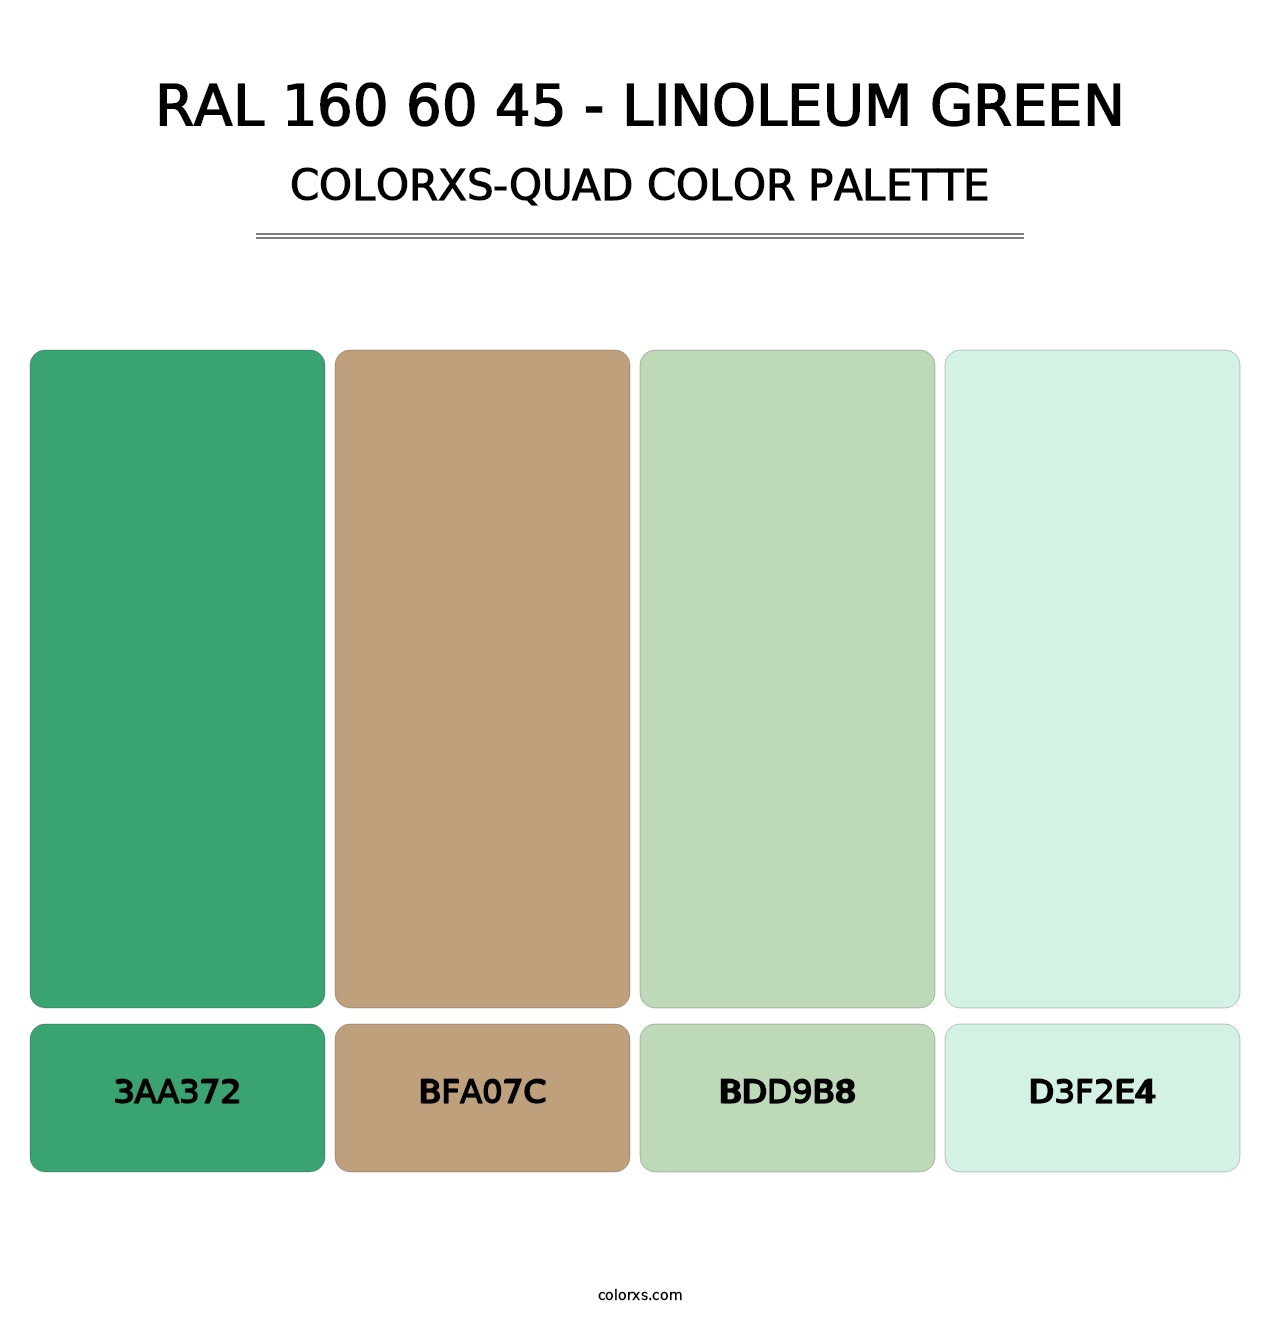 RAL 160 60 45 - Linoleum Green - Colorxs Quad Palette